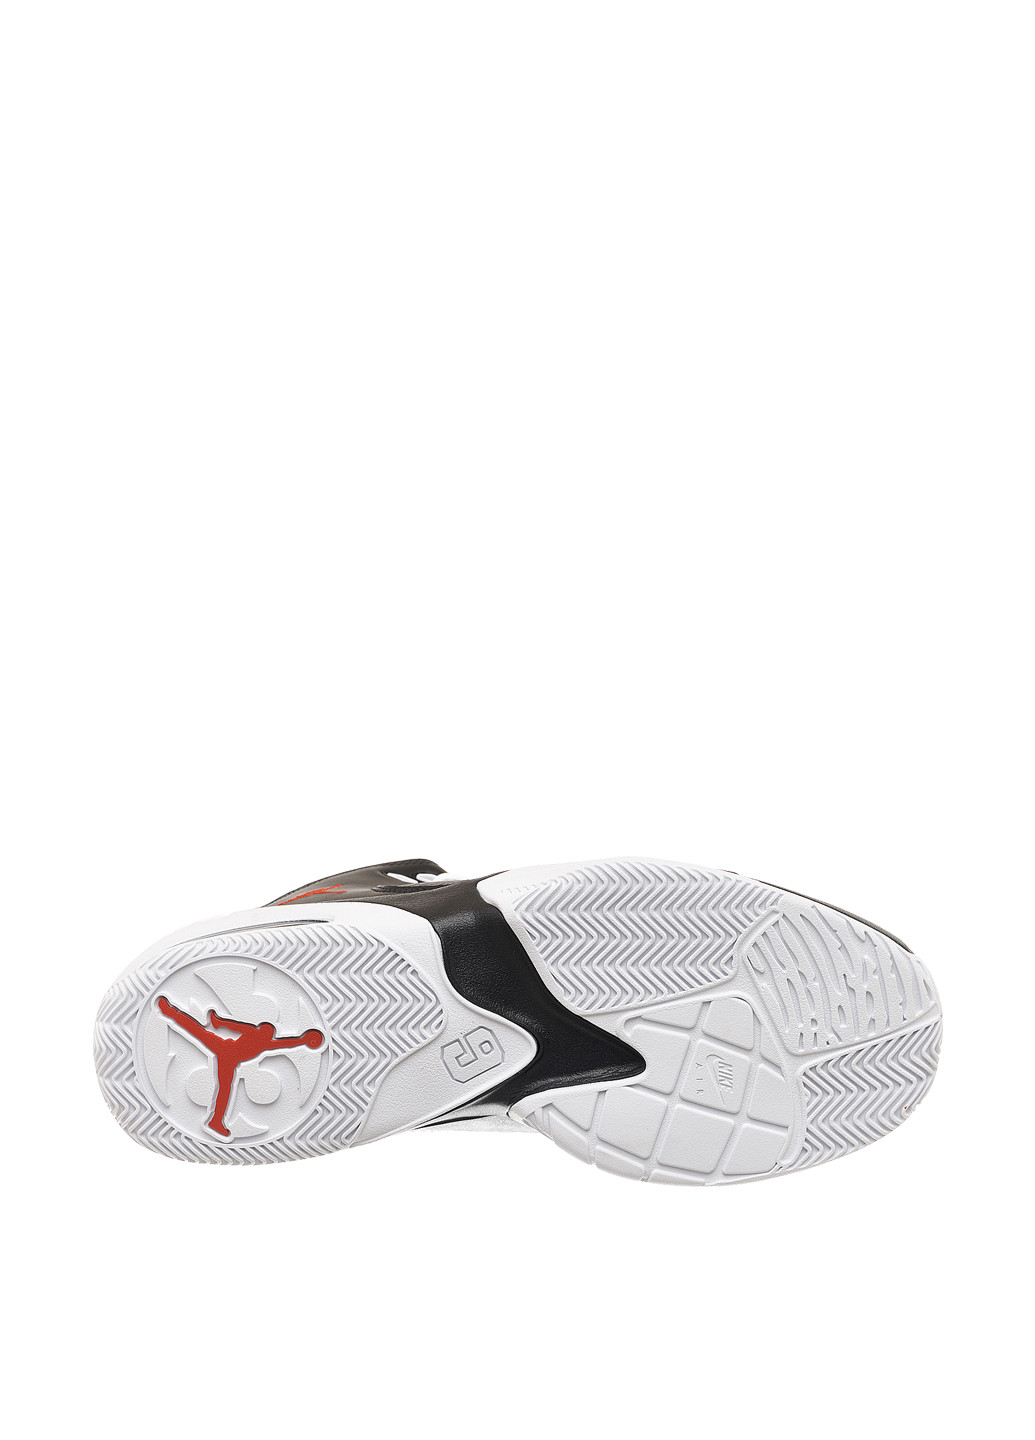 Цветные демисезонные кроссовки Jordan MAX AURA 3